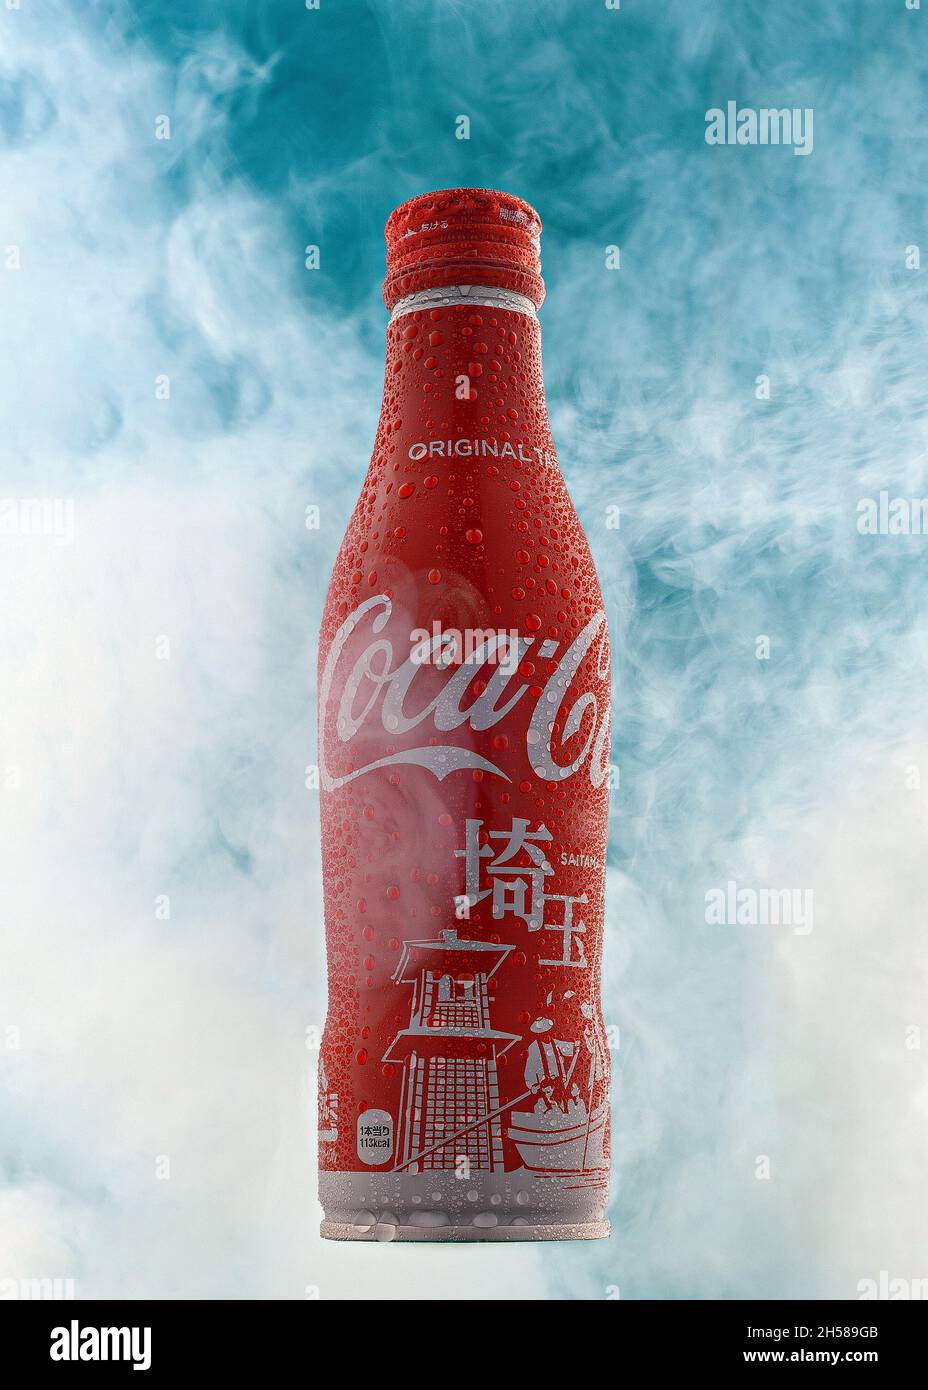 Foto editoriale di una bottiglia di Coca Cola in versione giapponese girata in verticale circondata da nebbia con gocce d'acqua su di essa. Esempio di flacone singolo Foto Stock